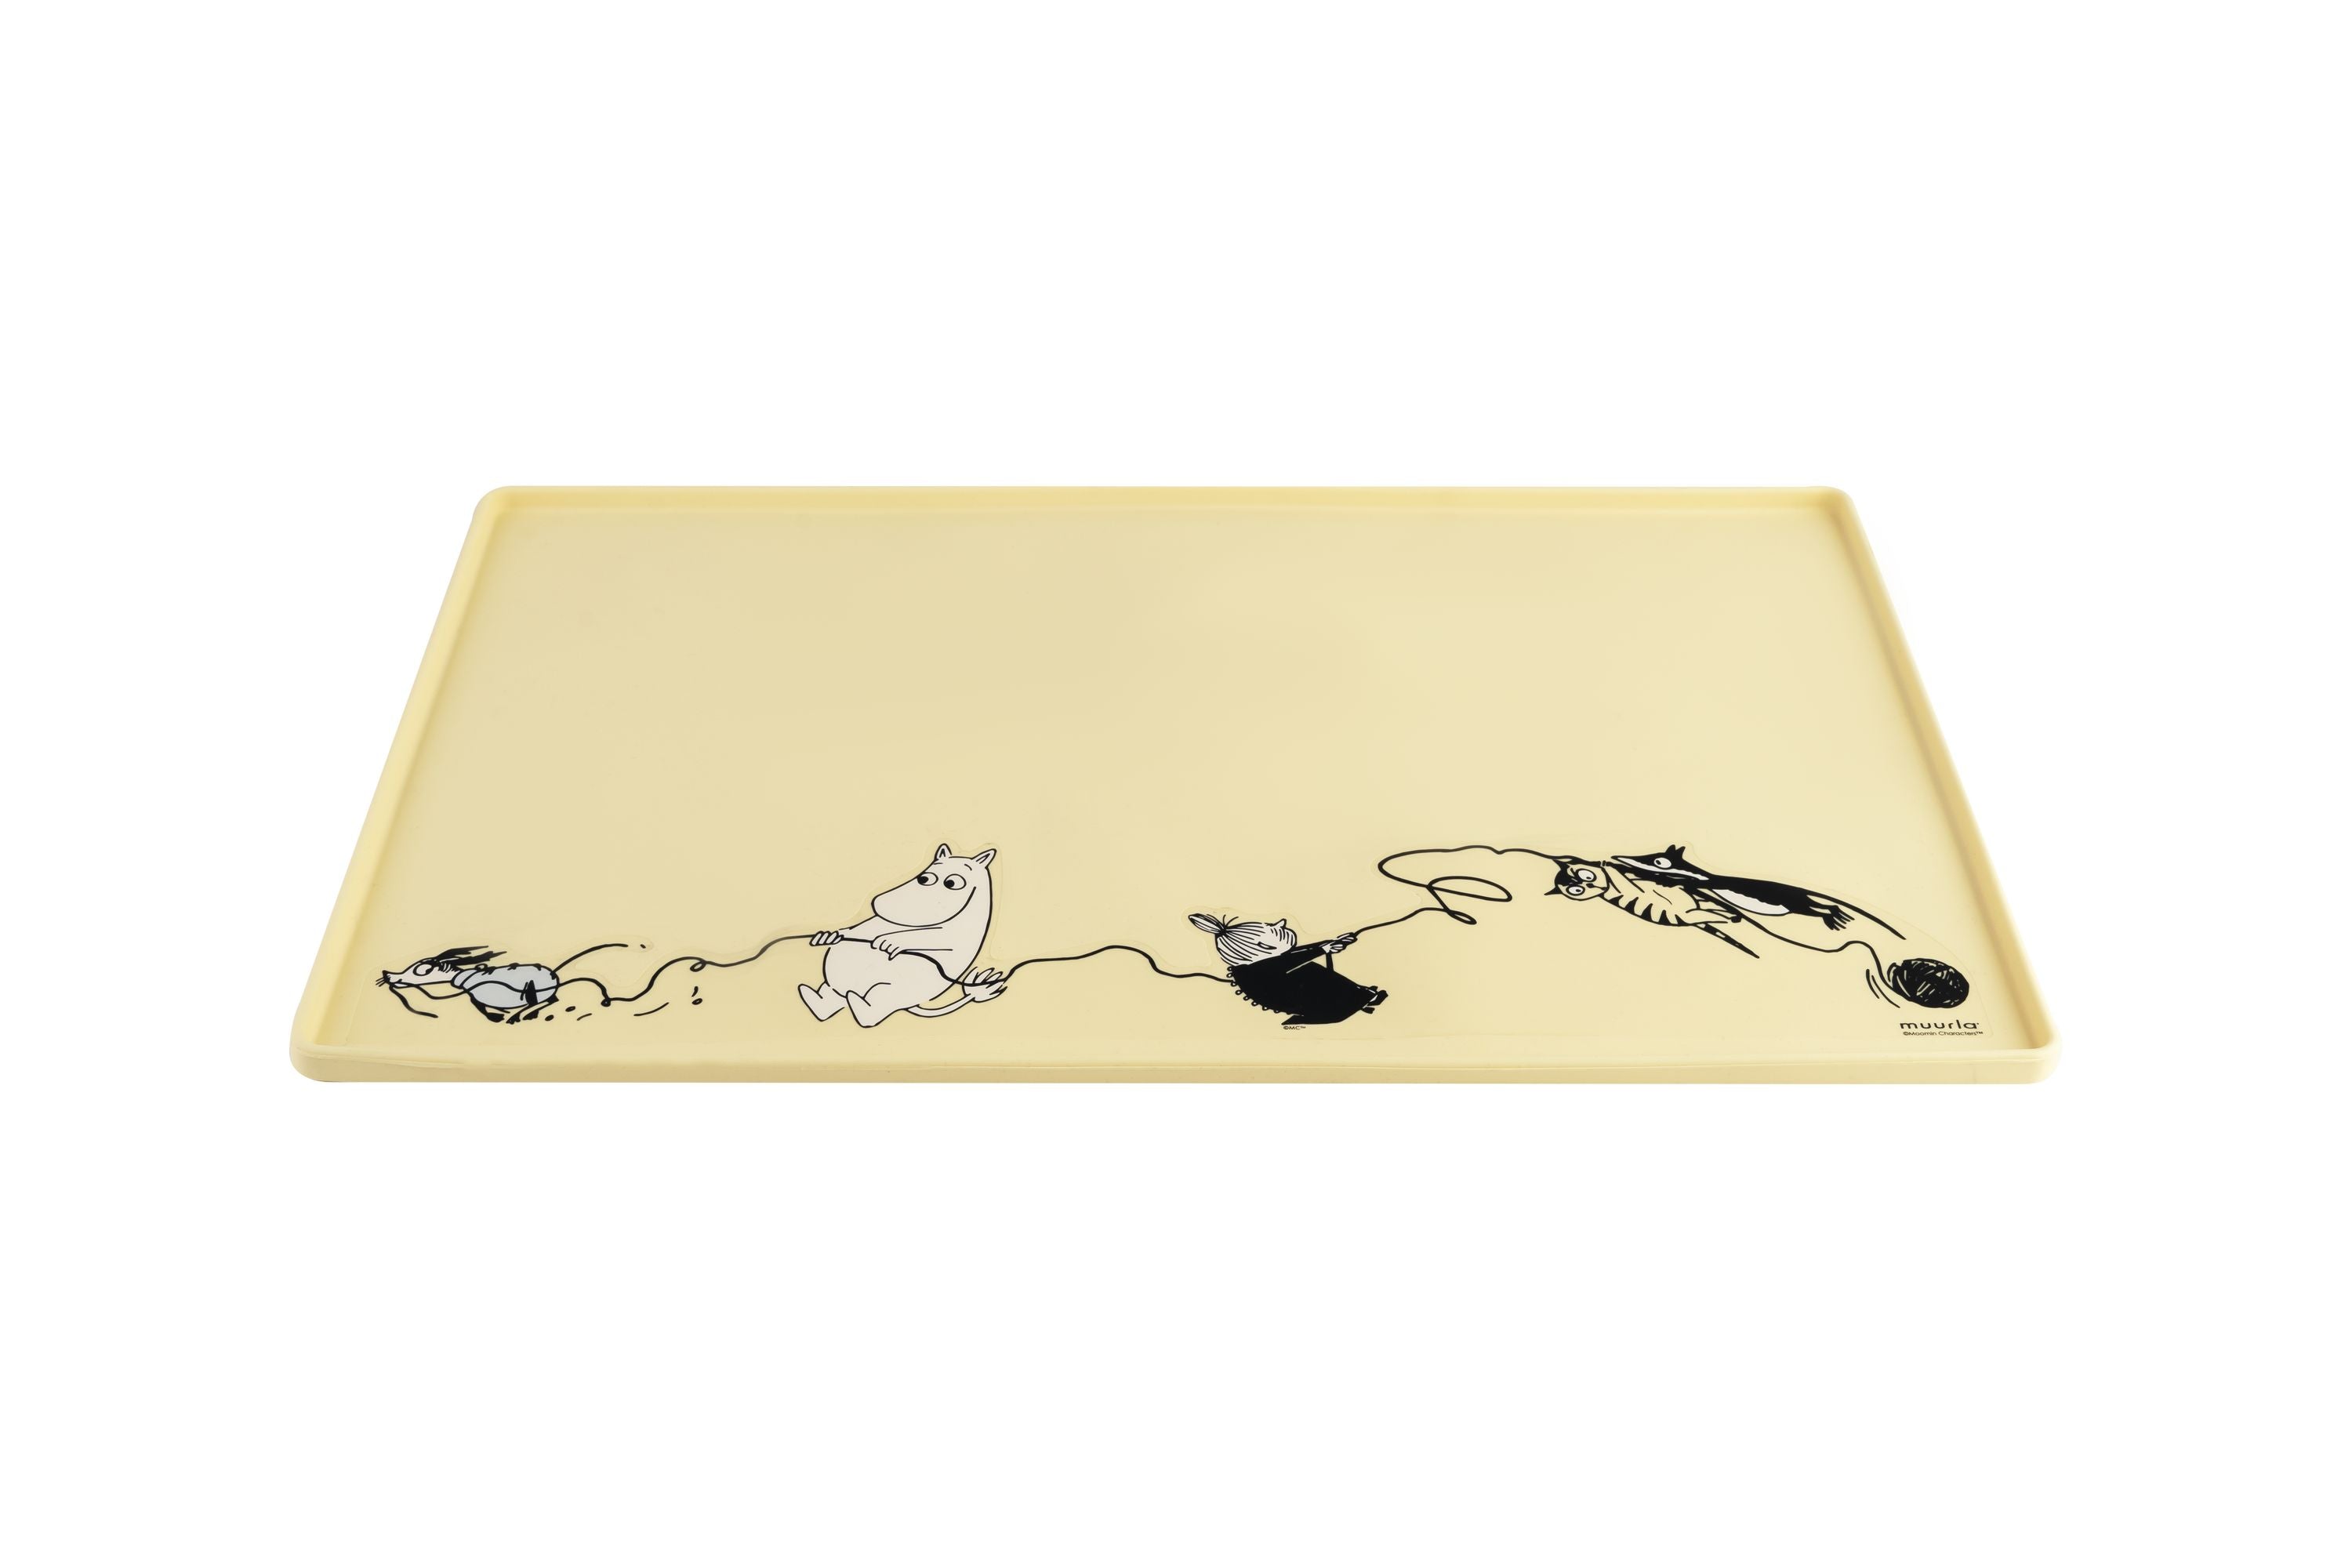 Muurla Moomin Animali del tappetino in silicone, giallo